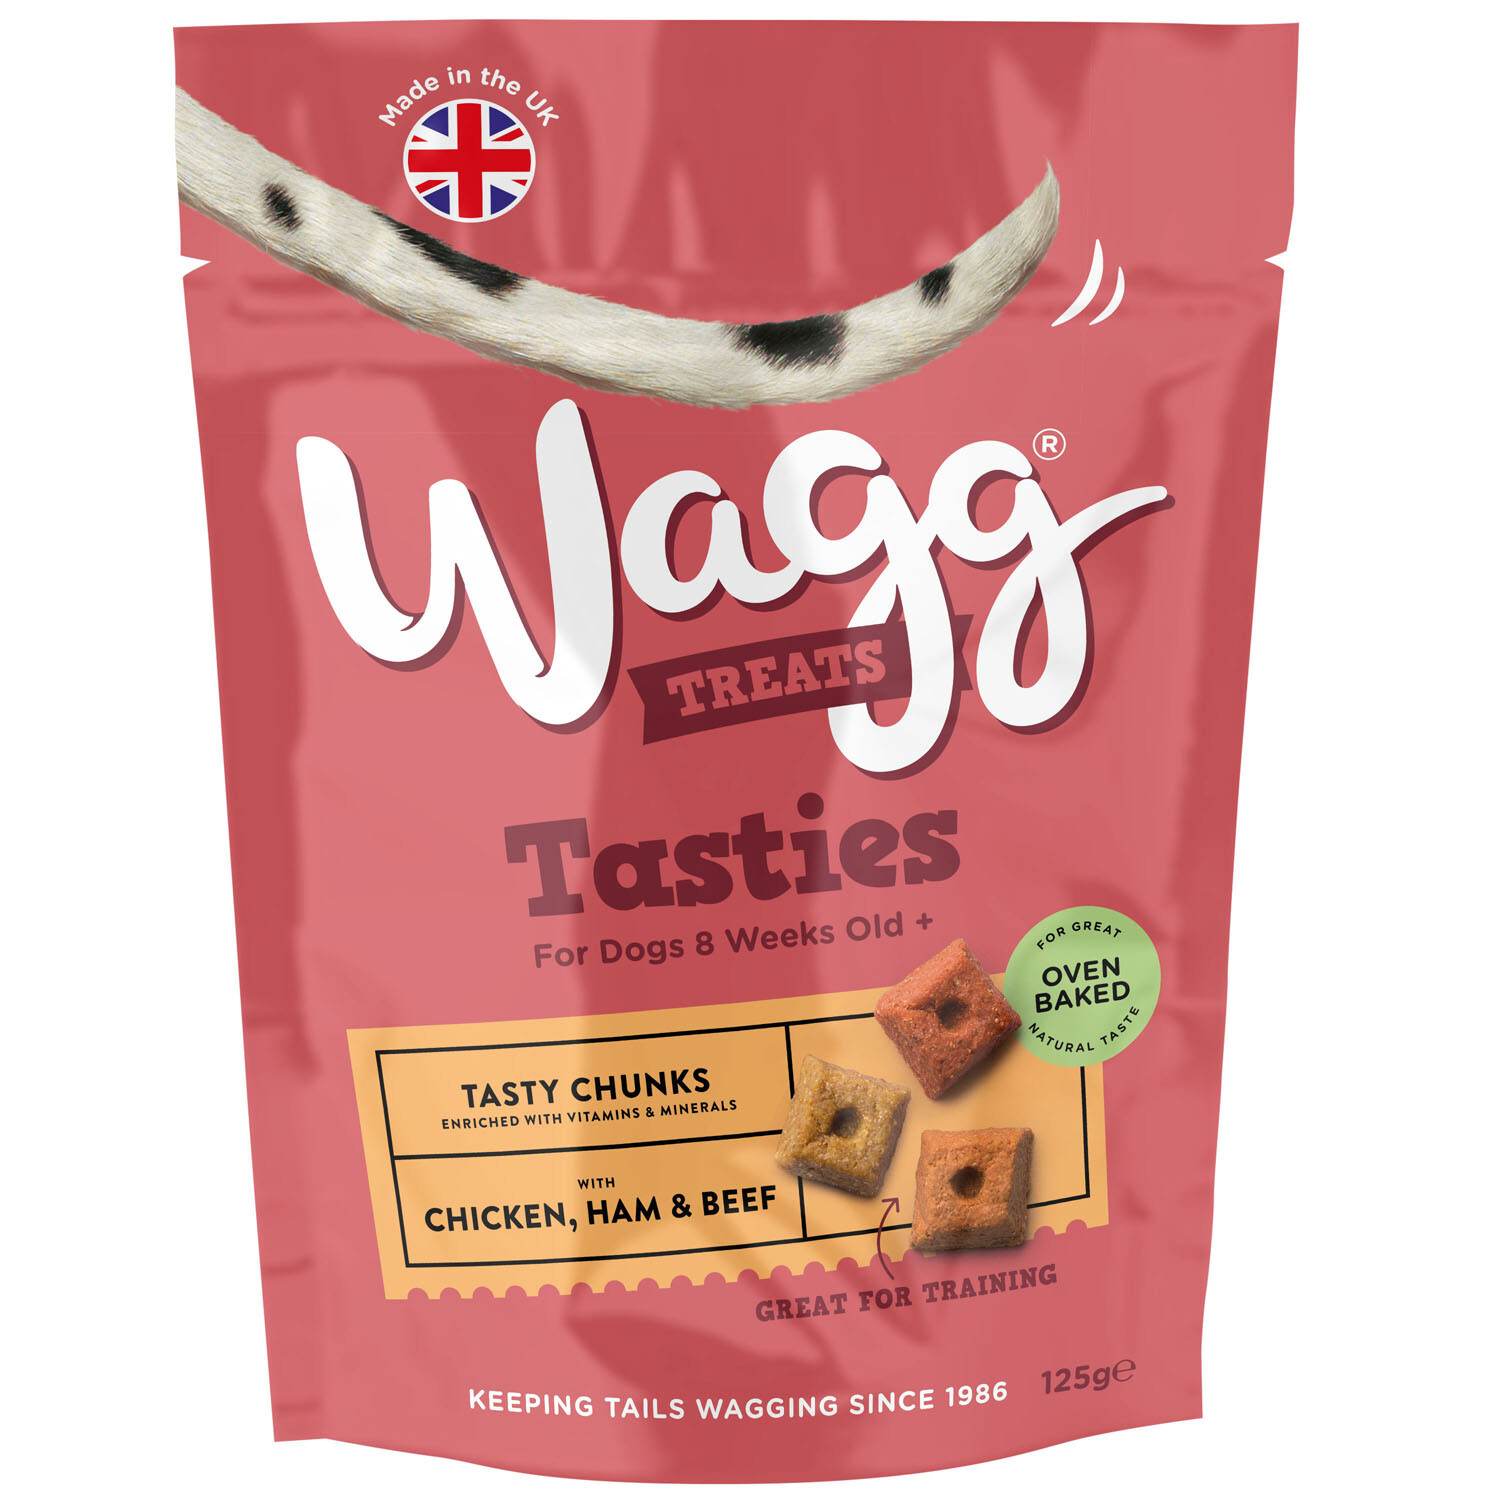 Wagg Tasties Chunks - 125g Image